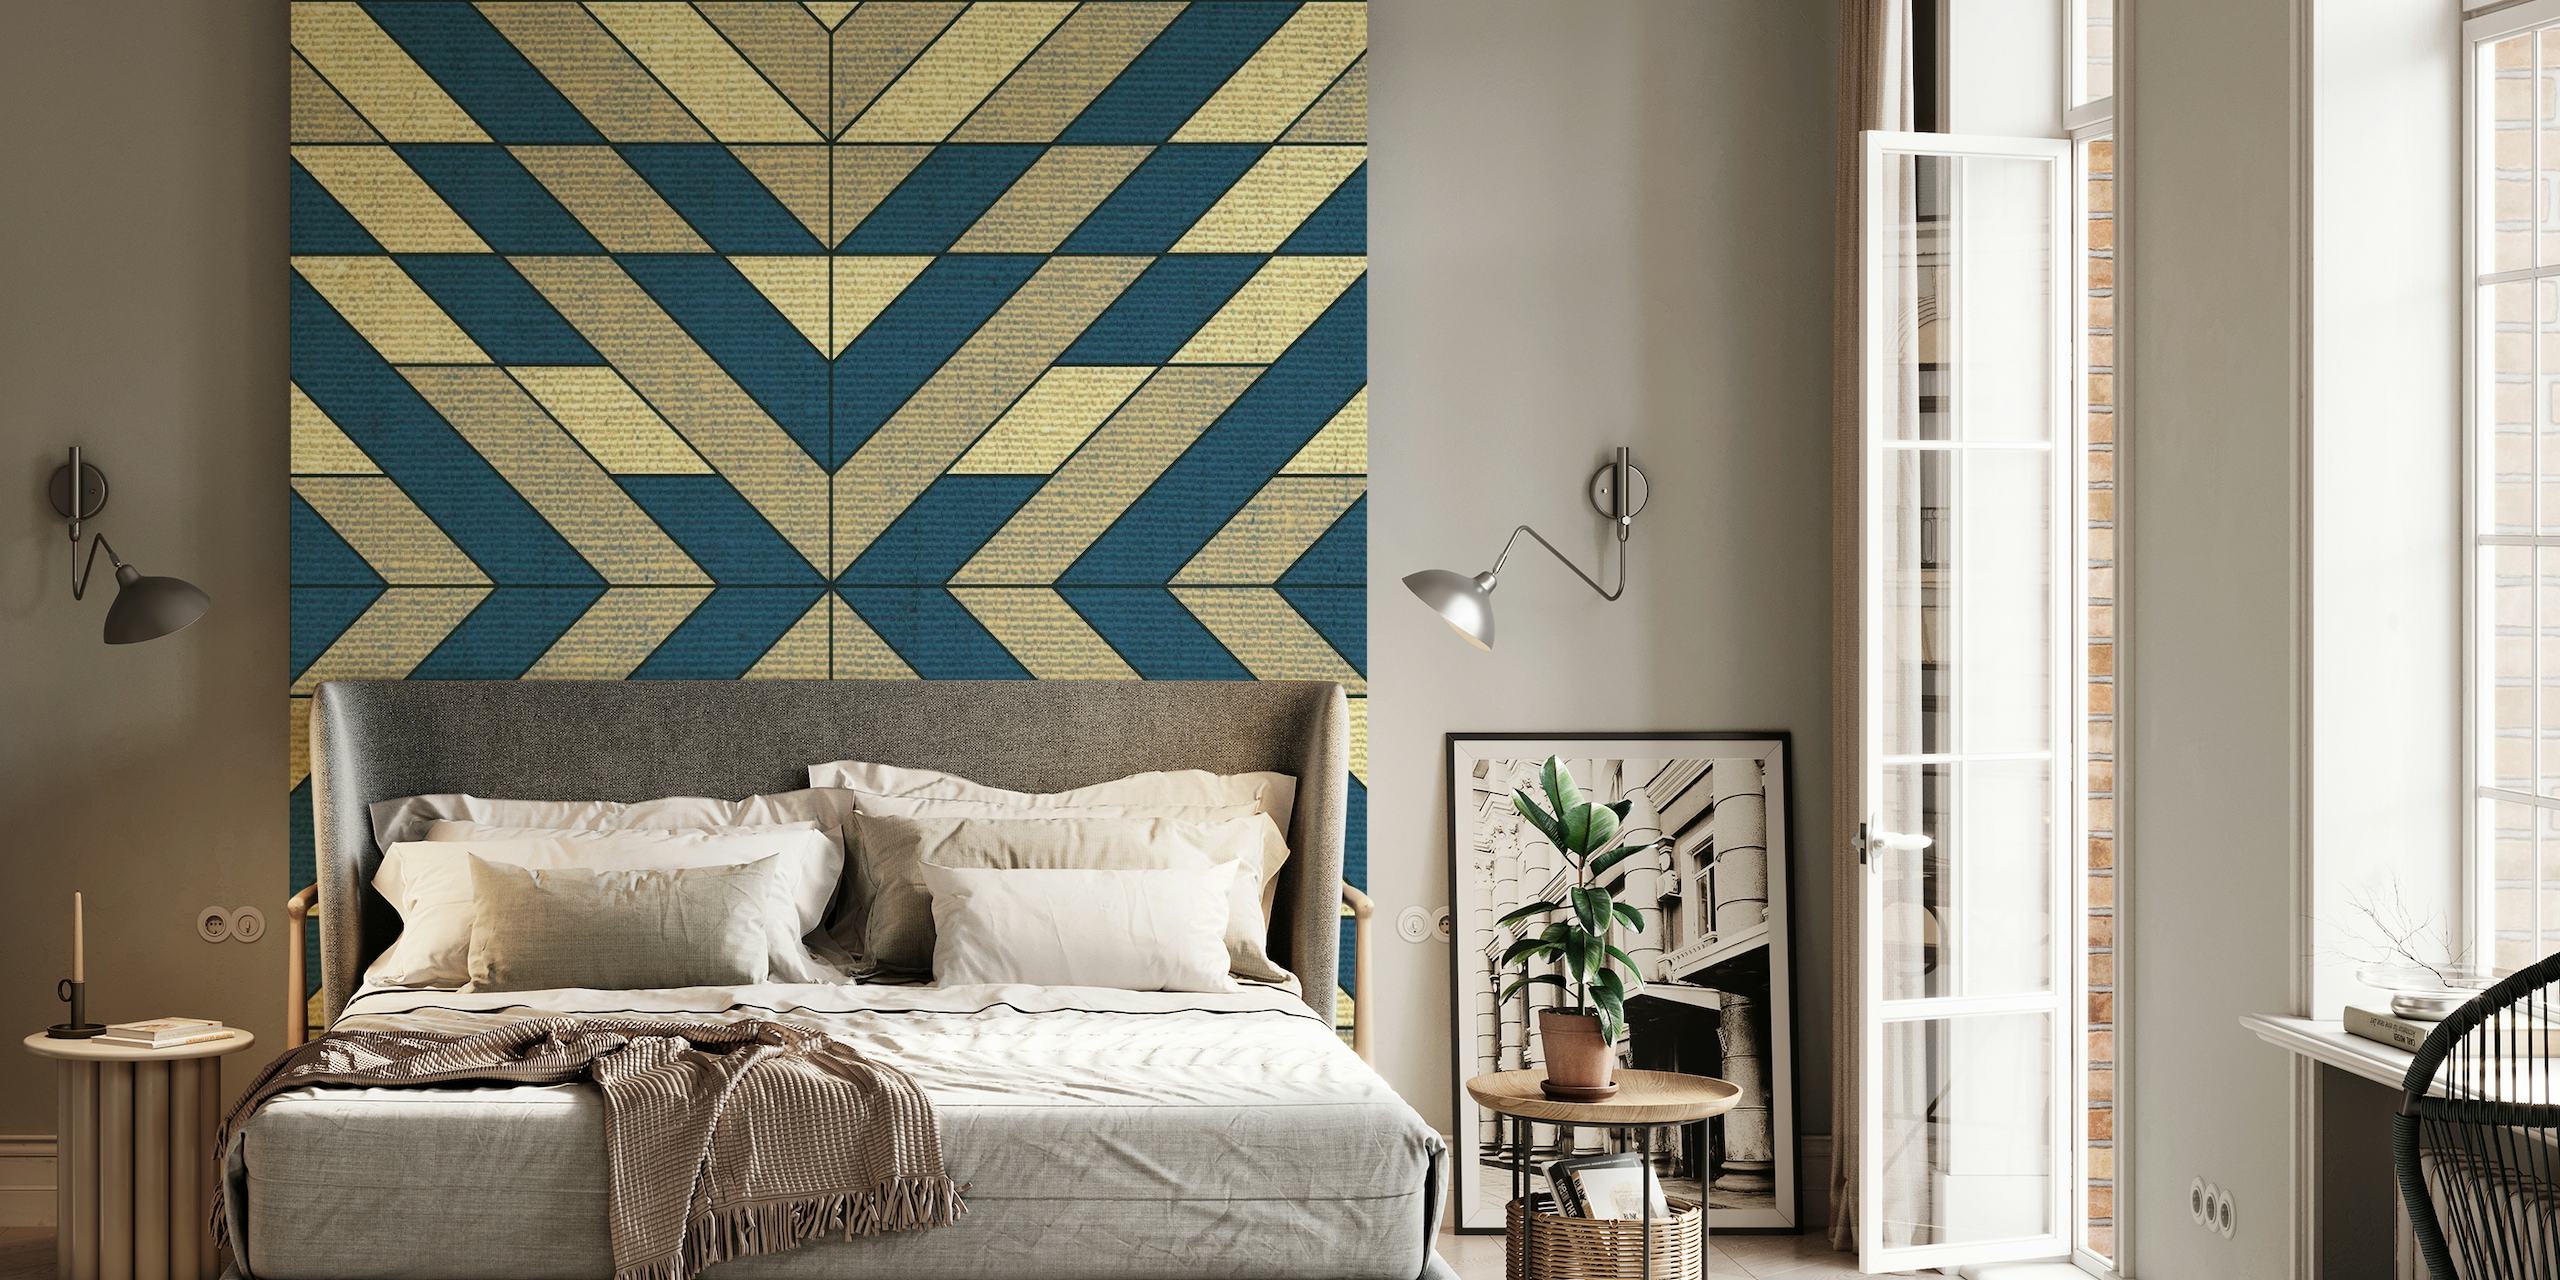 Geometric Symmetry on Textile wallpaper